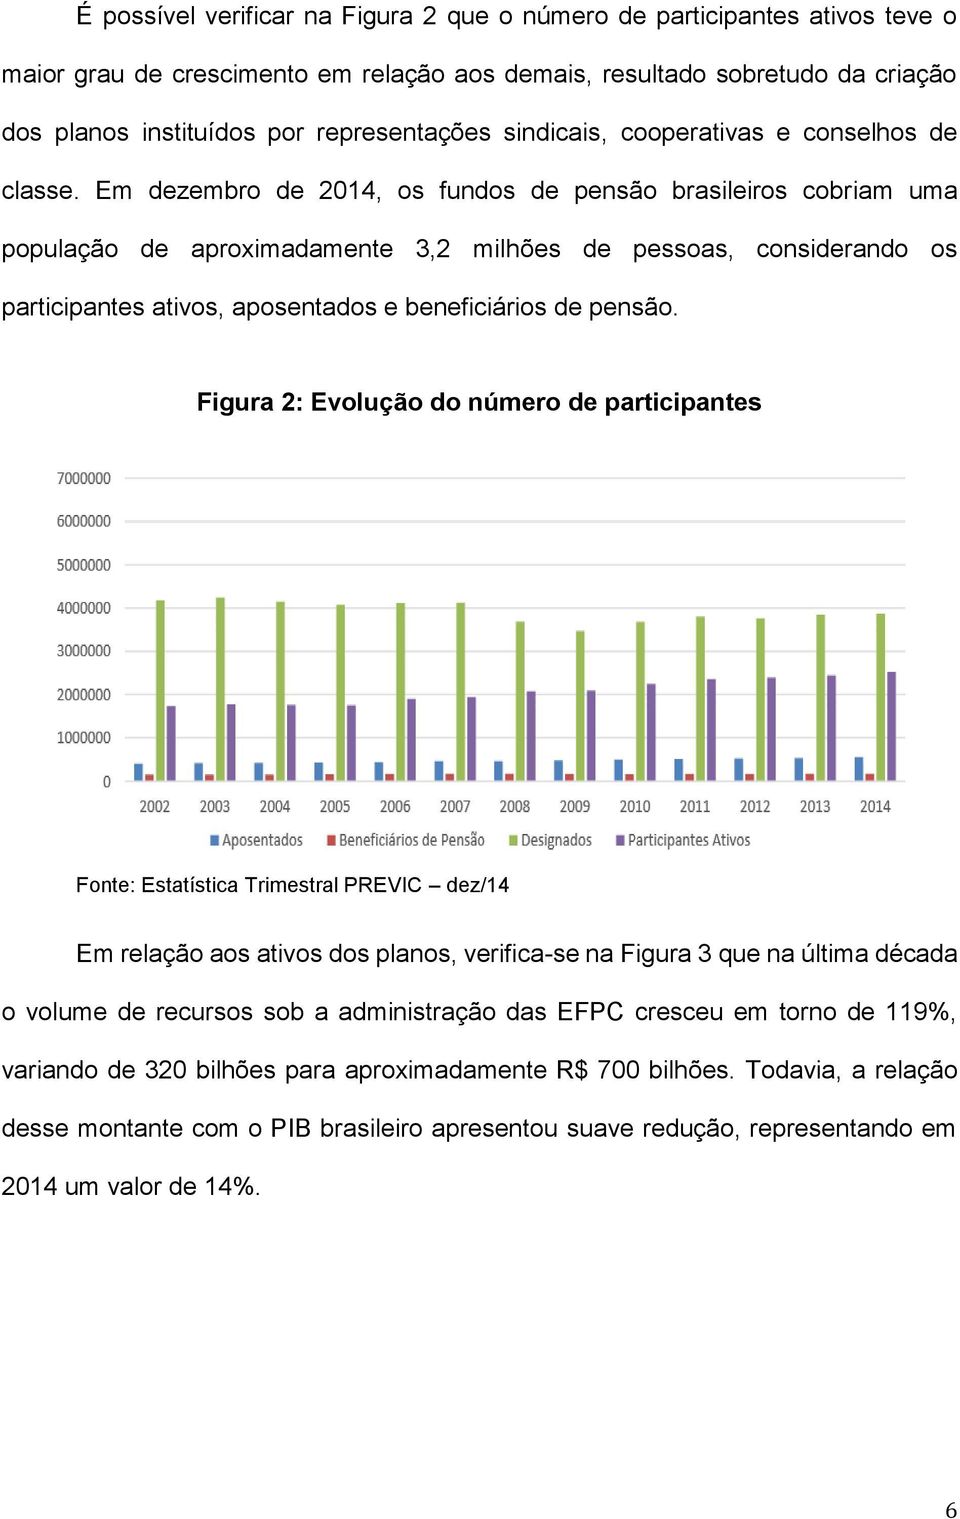 Em dezembro de 2014, os fundos de pensão brasileiros cobriam uma população de aproximadamente 3,2 milhões de pessoas, considerando os participantes ativos, aposentados e beneficiários de pensão.